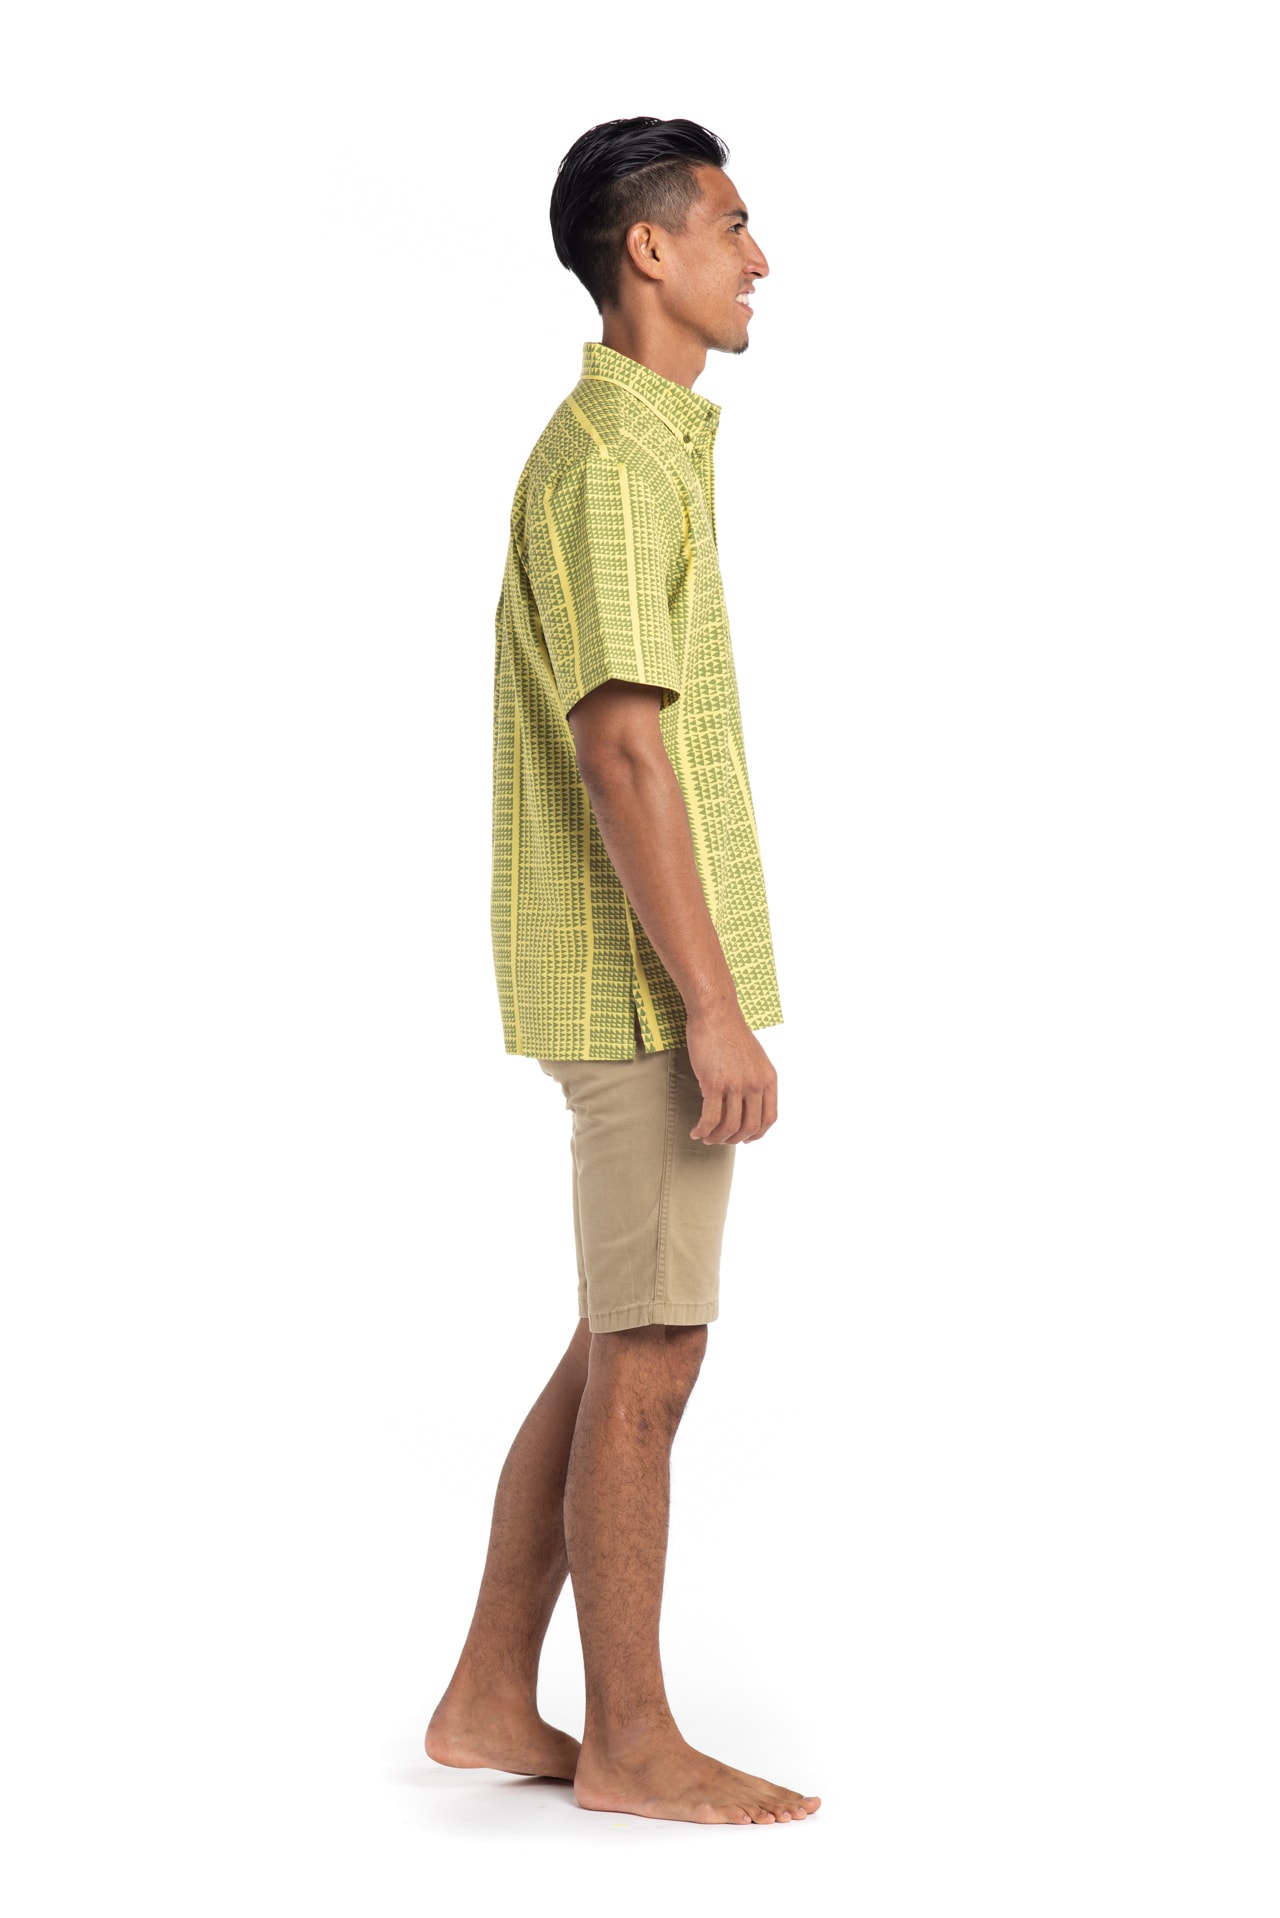 Male model wearing Mahalo Nui Shirt in Green Niho Ku - Side View